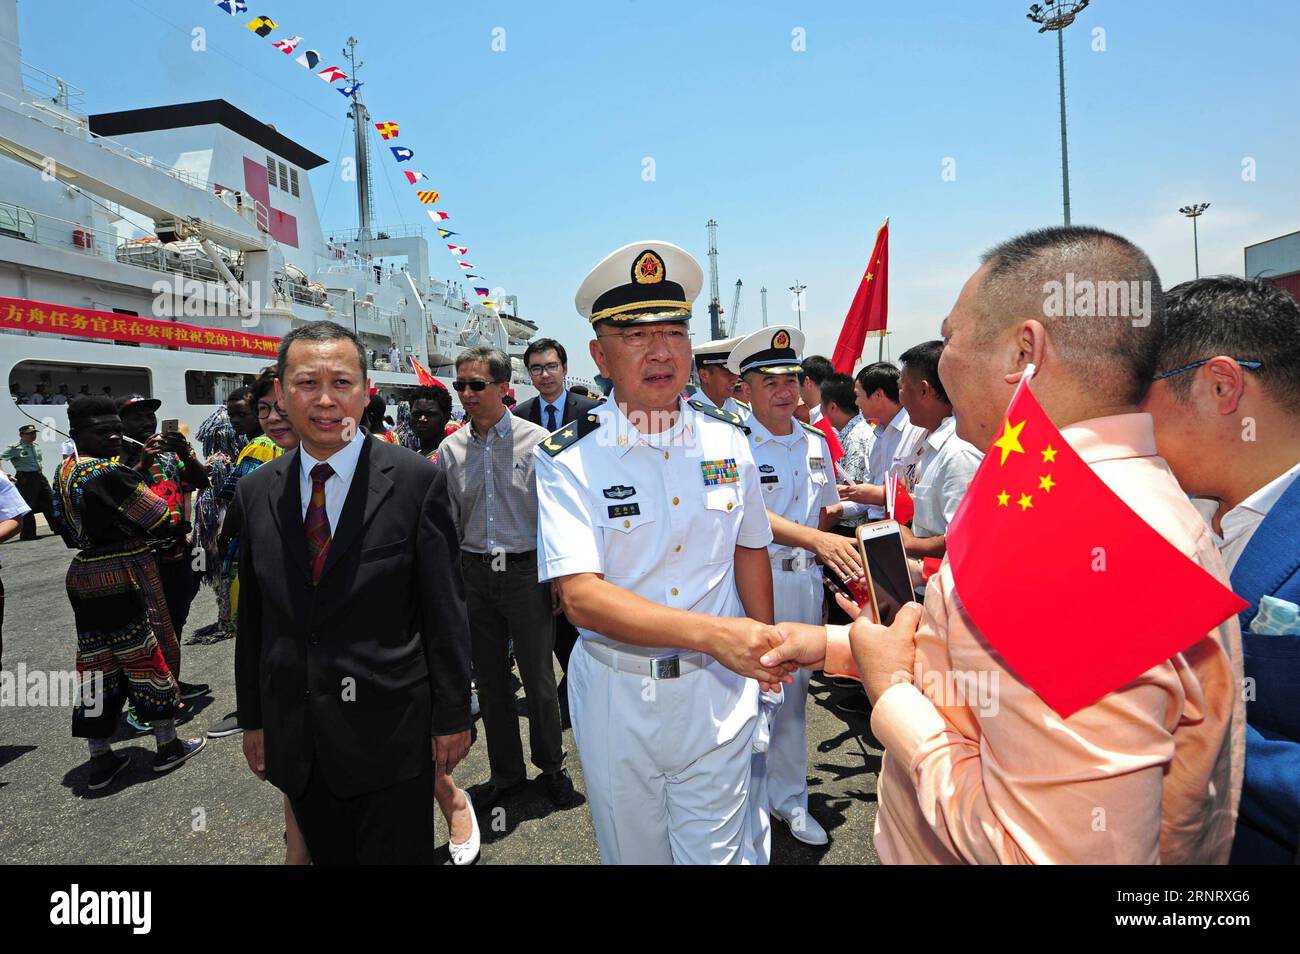 (171019) -- LUANDA, le 19 octobre 2017 -- le commandant du groupe opérationnel Peace Ark, navire-hôpital chinois, Guan Bailin (C) serre la main d'un représentant des Chinois d'outre-mer à Luanda, en Angola, le 19 octobre 2017. Le navire-hôpital de la marine chinoise Peace Ark est arrivé jeudi matin à Luanda, pour une mission de huit jours visant à fournir des services médicaux gratuits à la population locale. ANGOLA-LUANDA-MARINE CHINOISE-PEACE ARK-ARRIVÉE JIANGXSHAN PUBLICATIONXNOTXINXCHN Banque D'Images